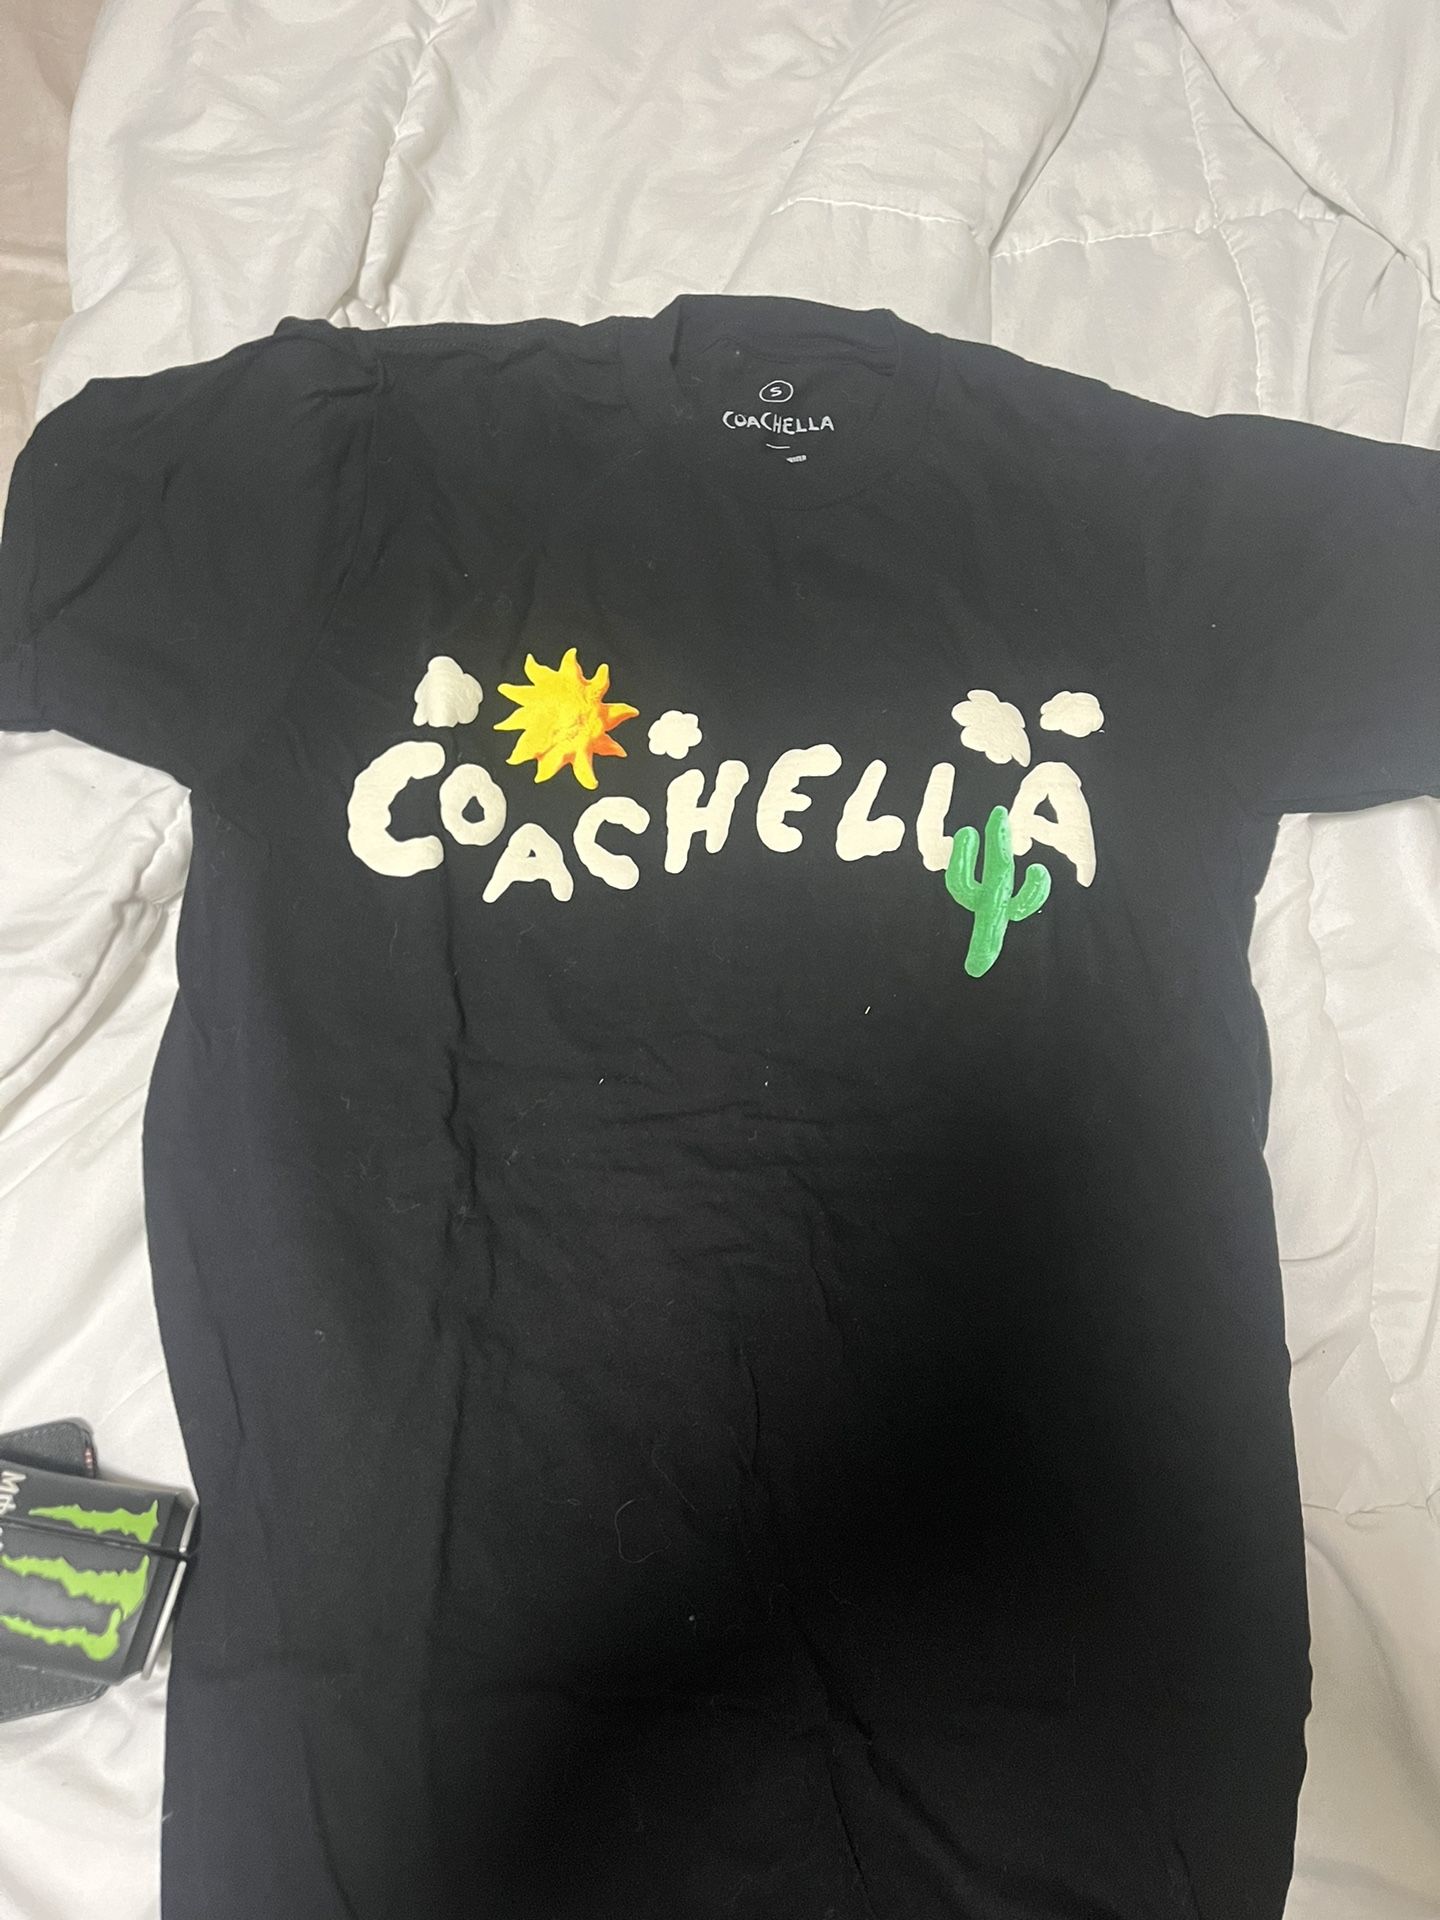 Coachella Shirt Size Small